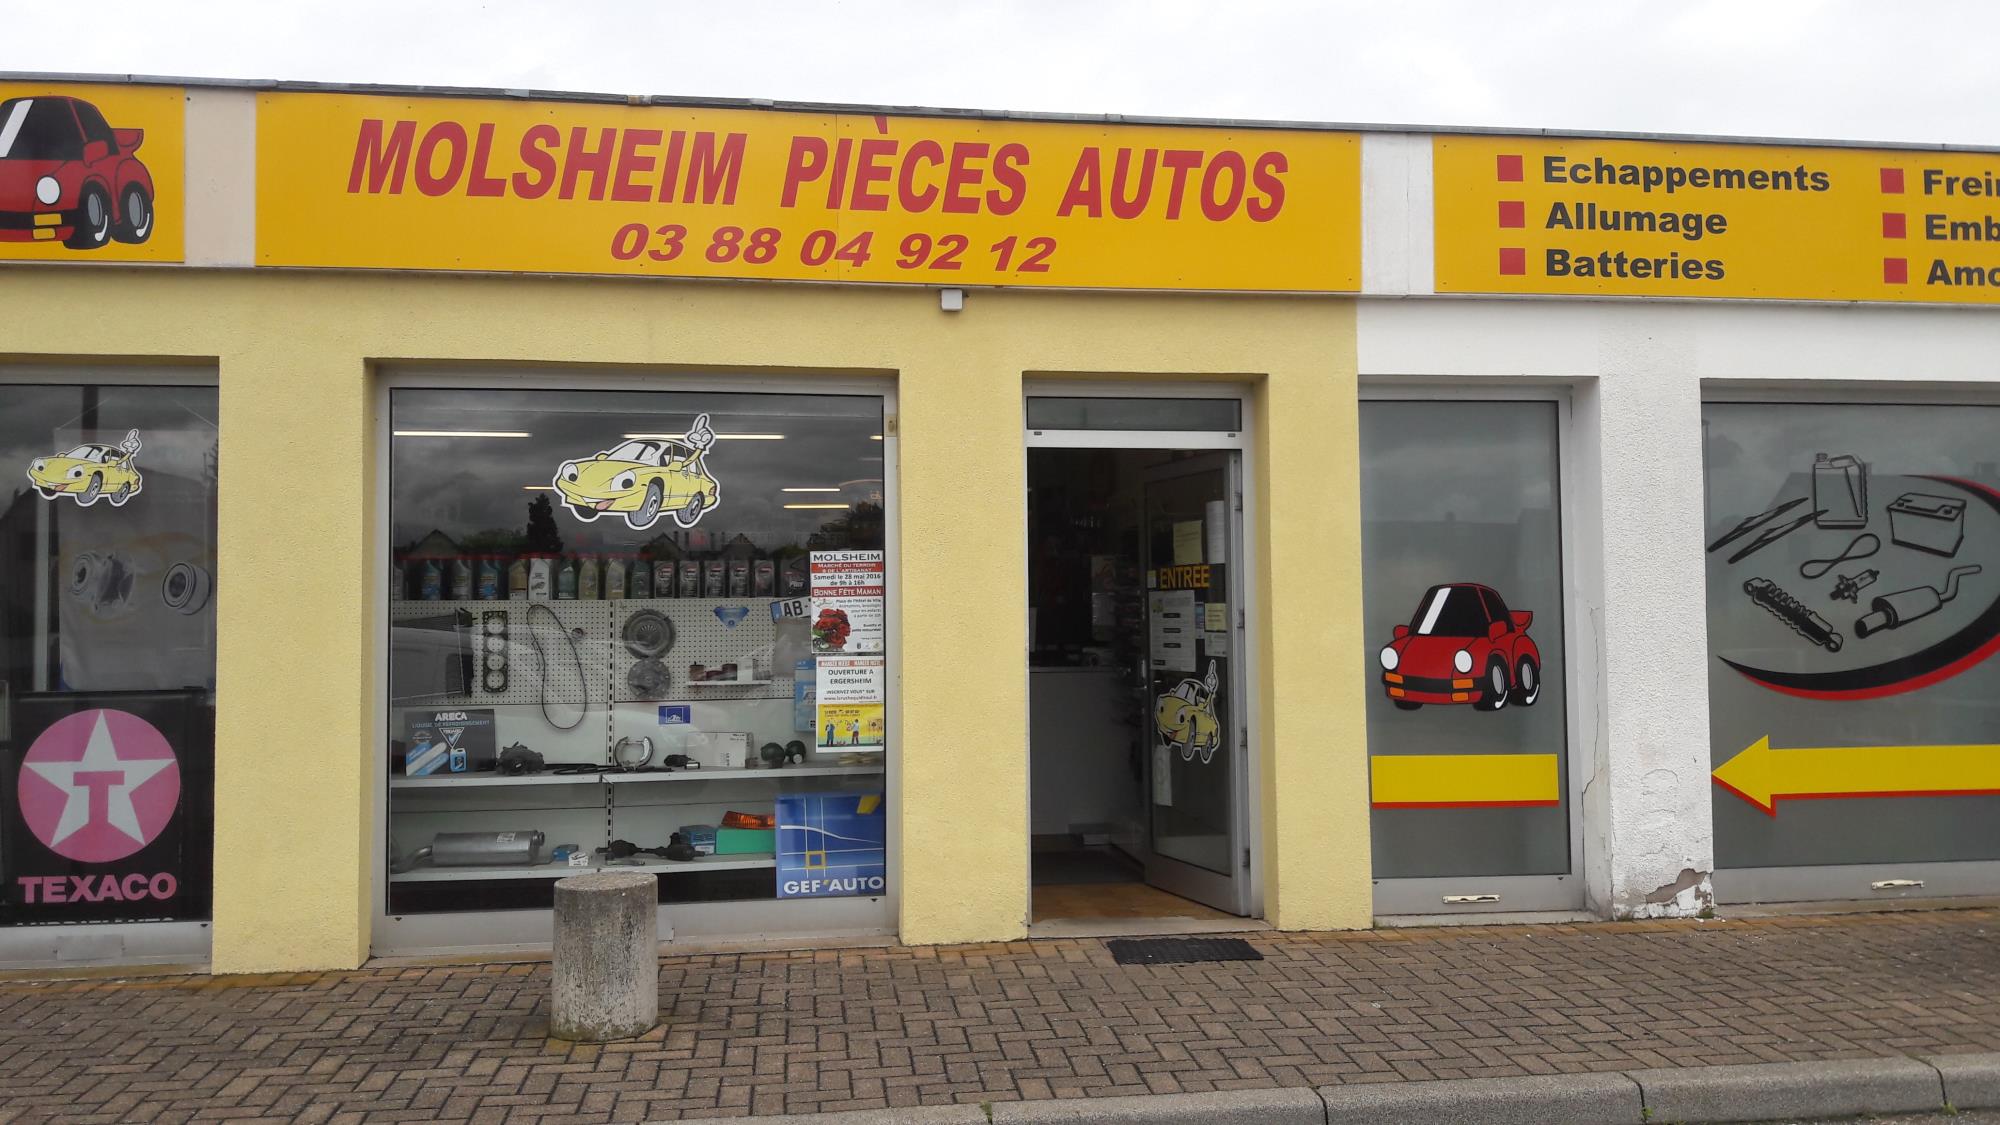 Molsheim Pieces Autos - Pièces détachées automobiles Gef'auto